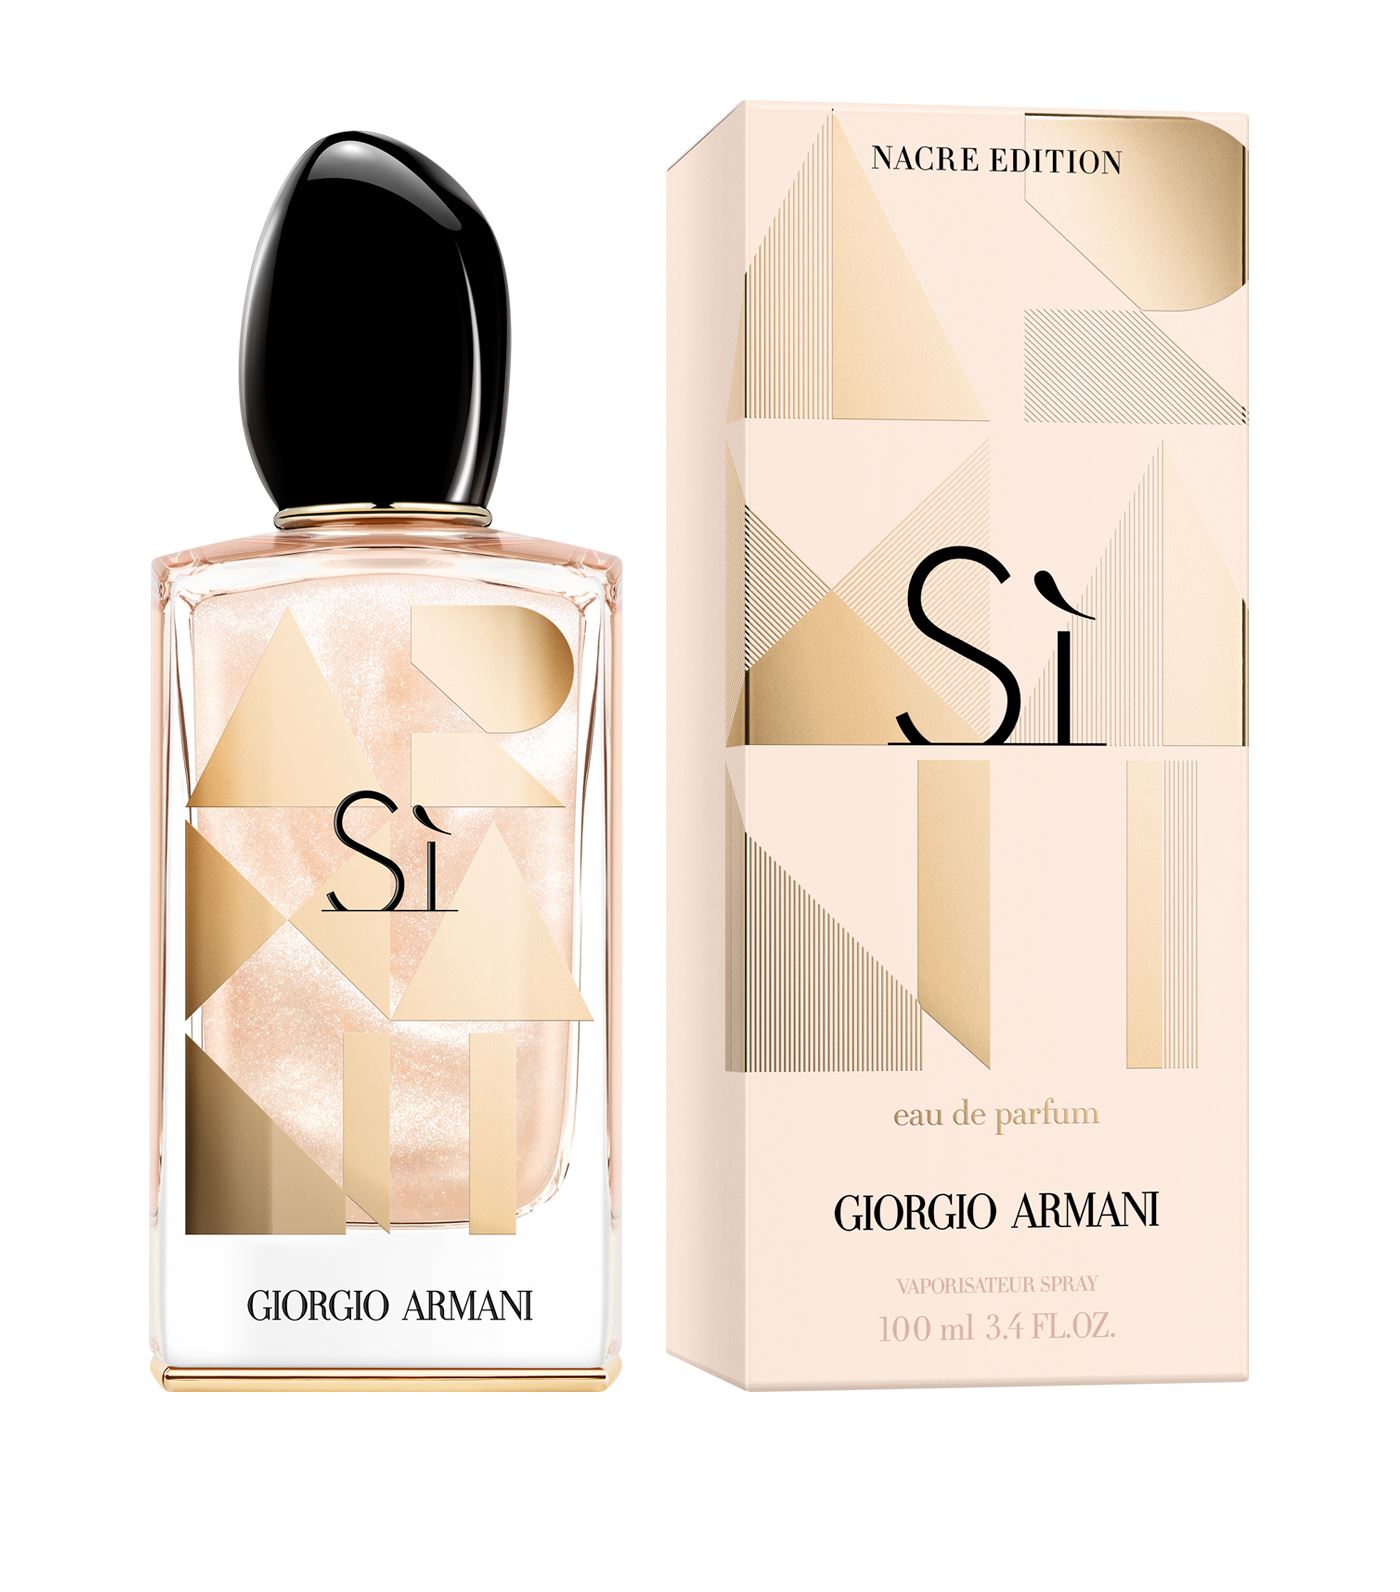 Si Nacre Edition Giorgio Armani perfume 